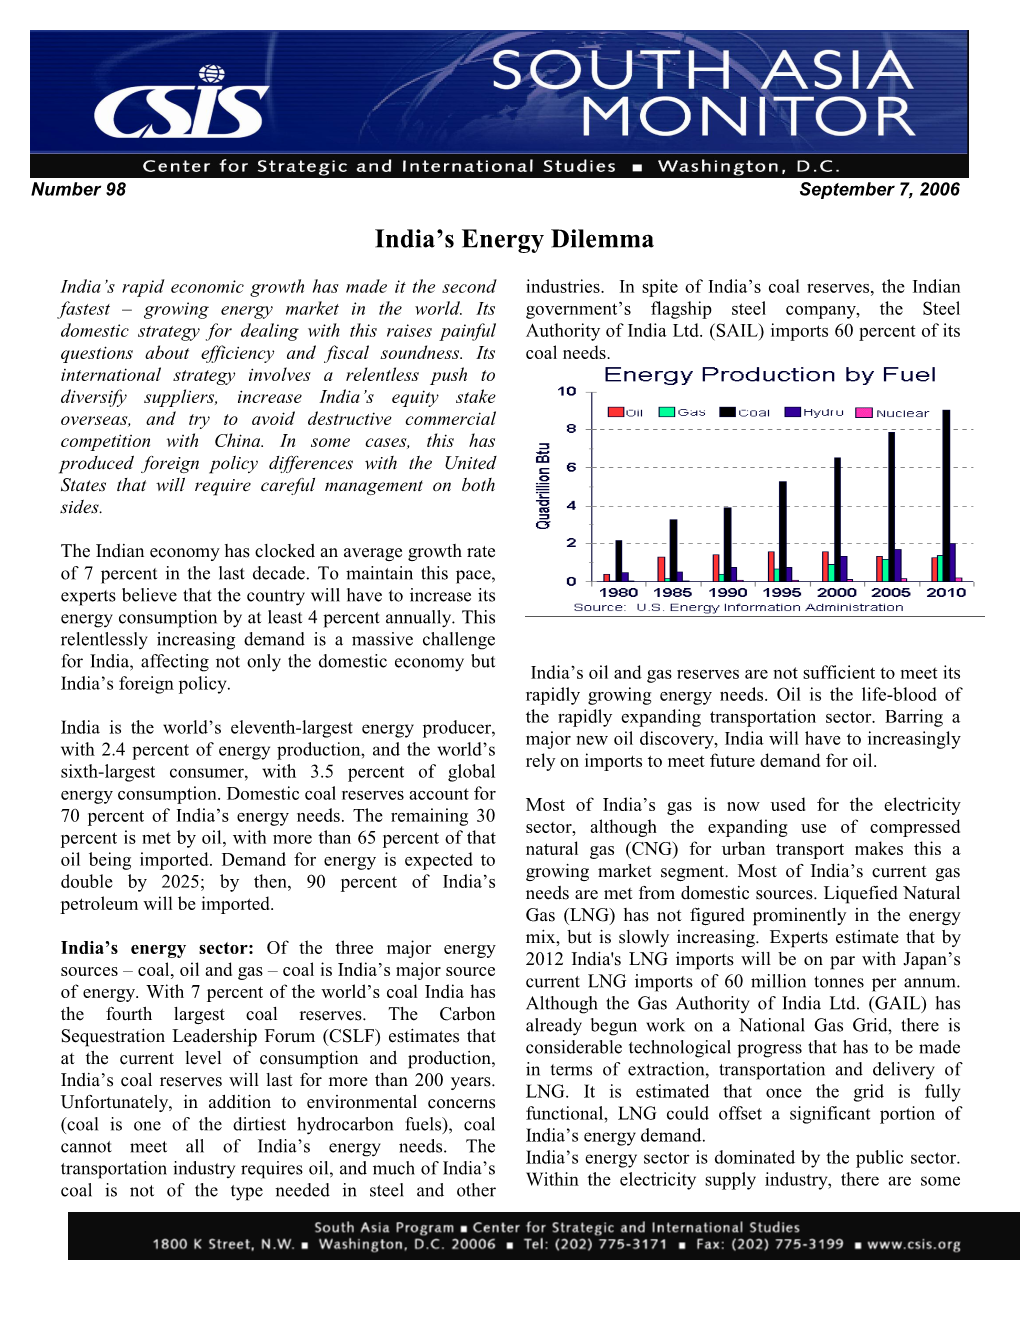 India's Energy Dilemma